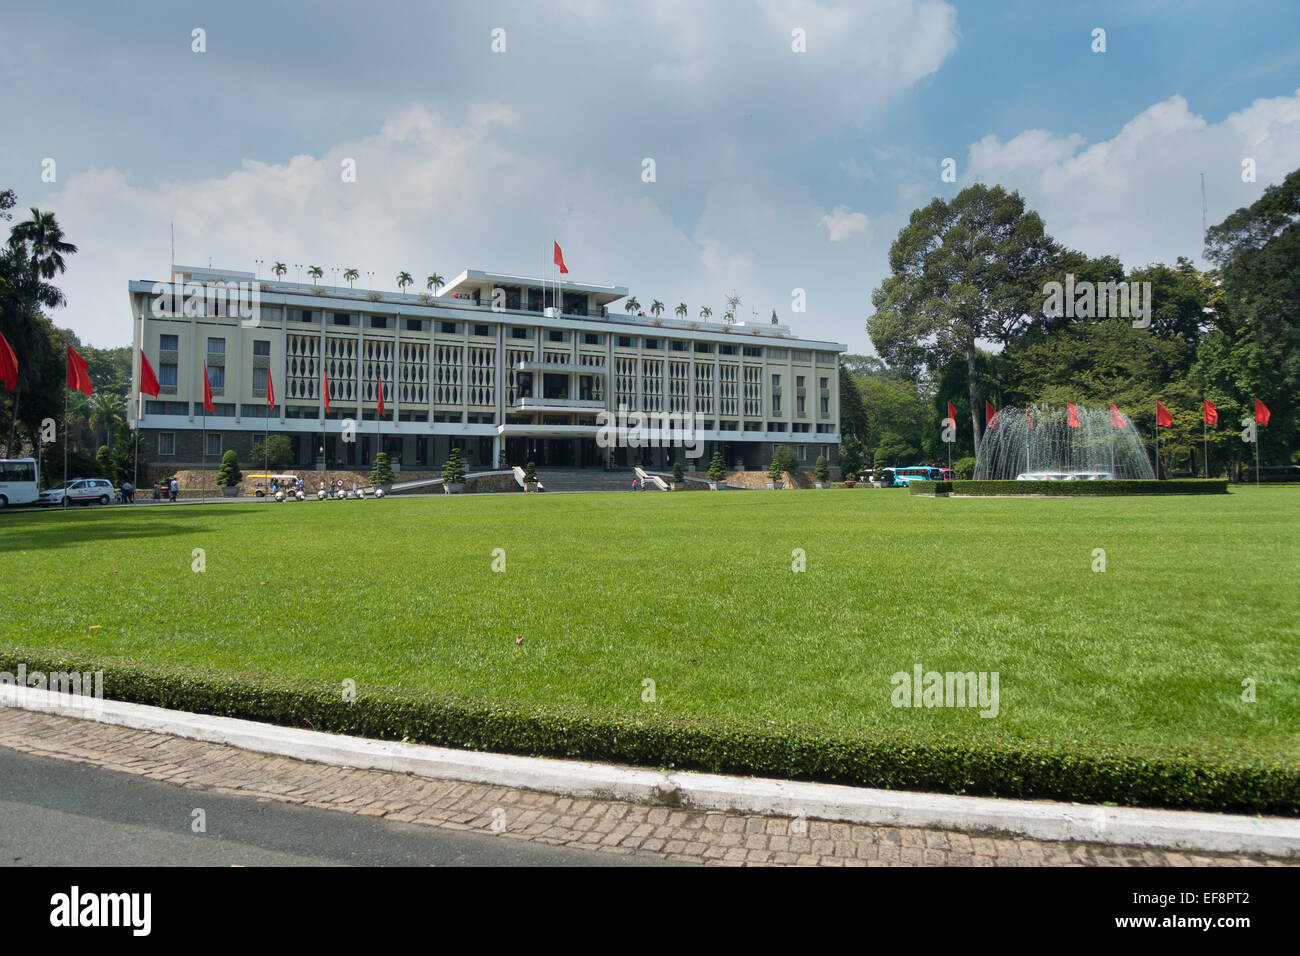 Palacio de la reunificación, de 1955 a 1975 Palacio de la independencia, el famoso monumento, Ho Chi Minh, Vietnam Foto de stock